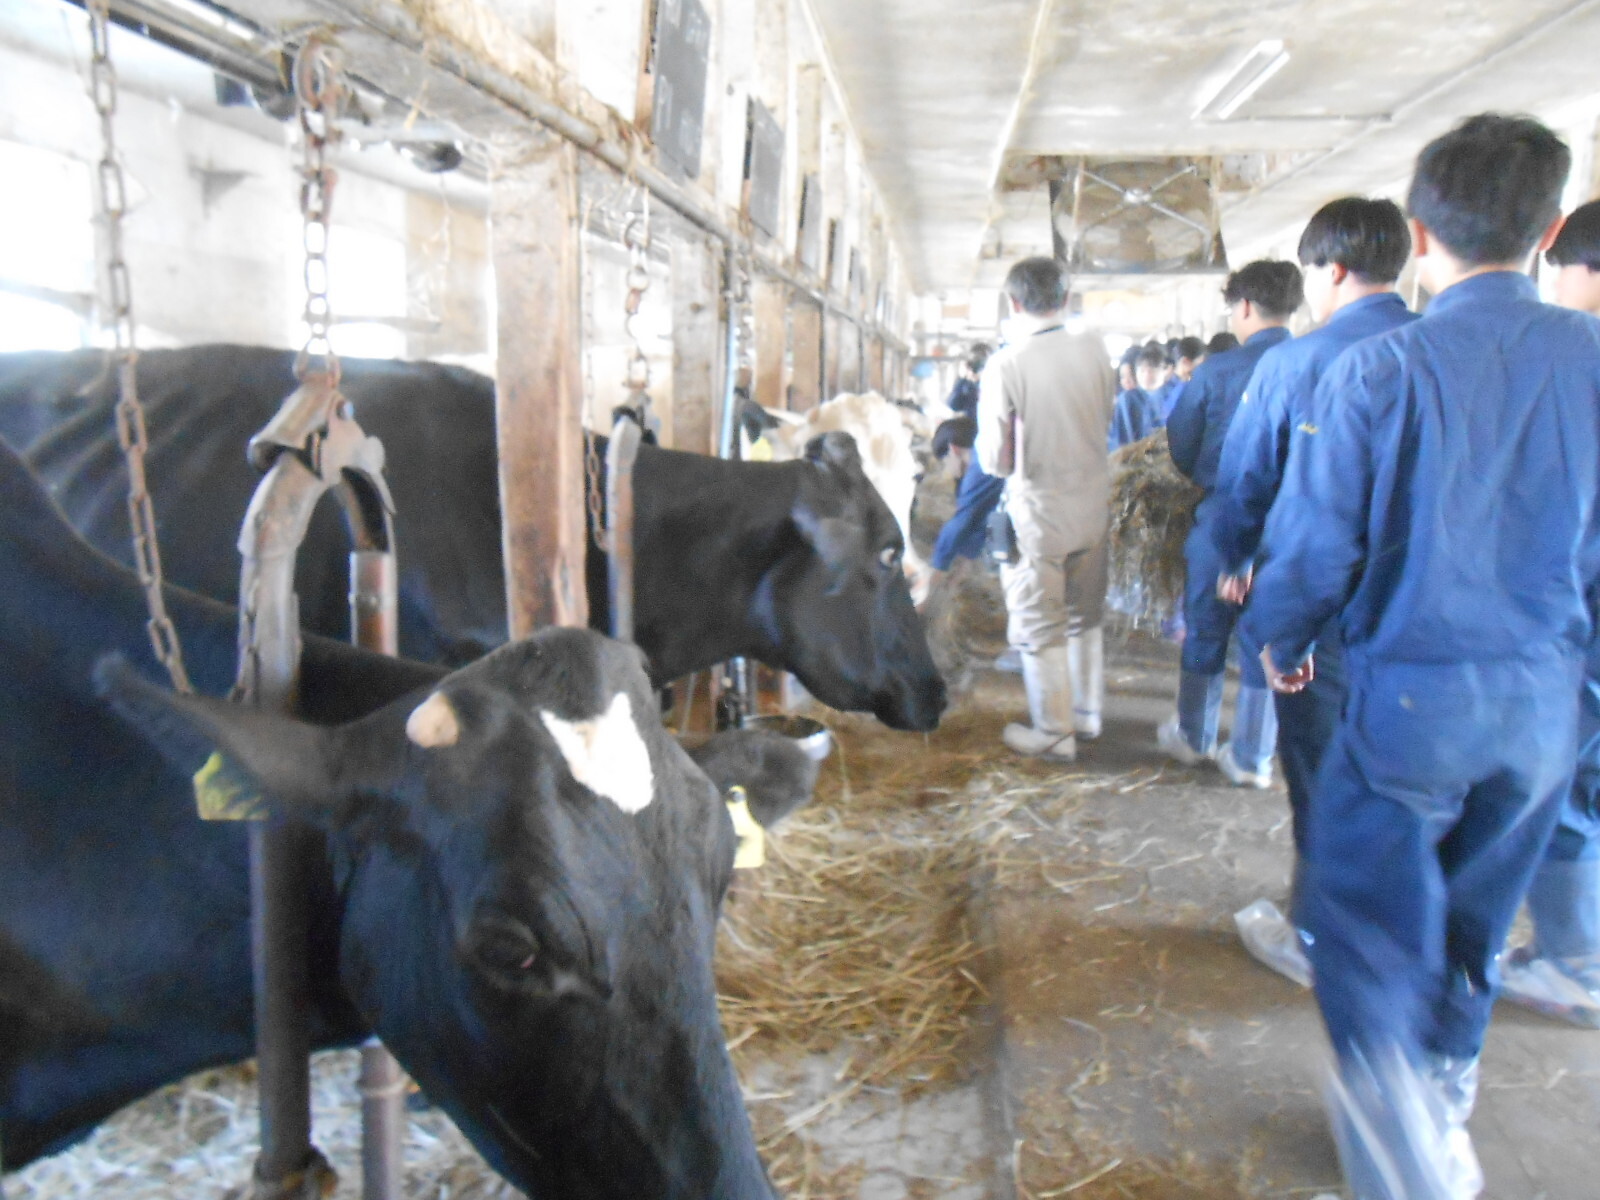 大津牧場の牛舎で檜山北高校の生徒が乳牛への餌やりを行っている様子